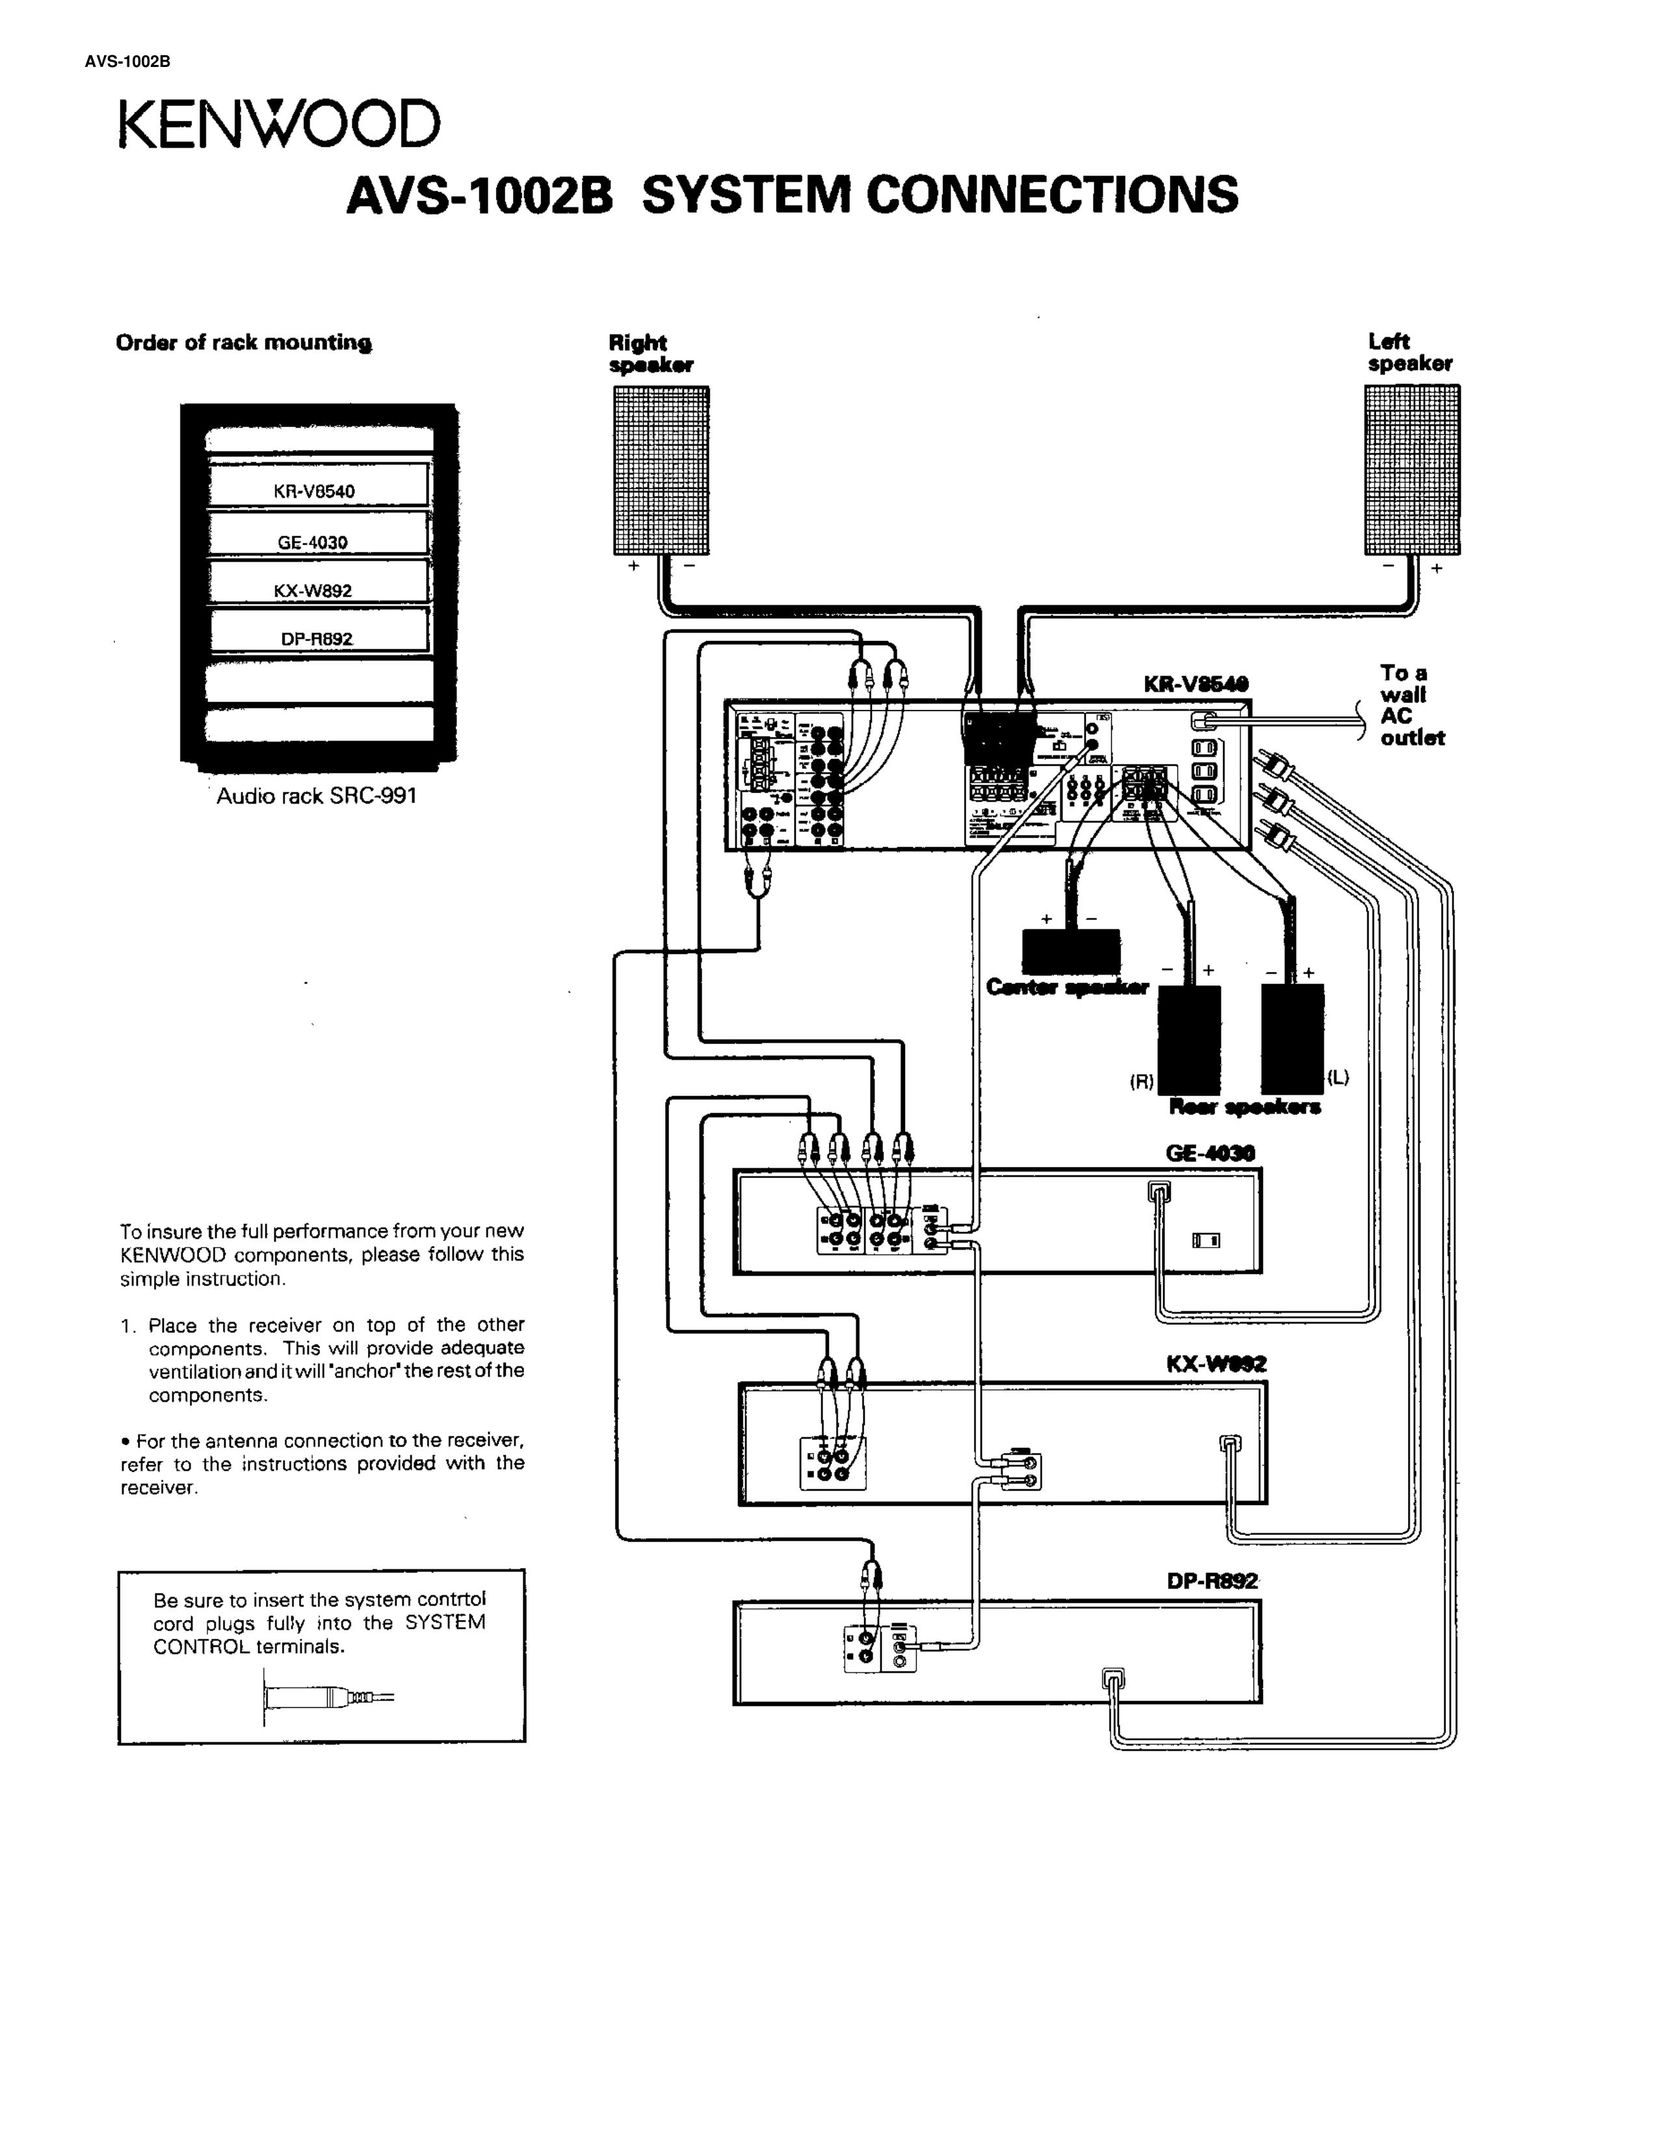 Kenwood AVS-1002B Stereo System User Manual